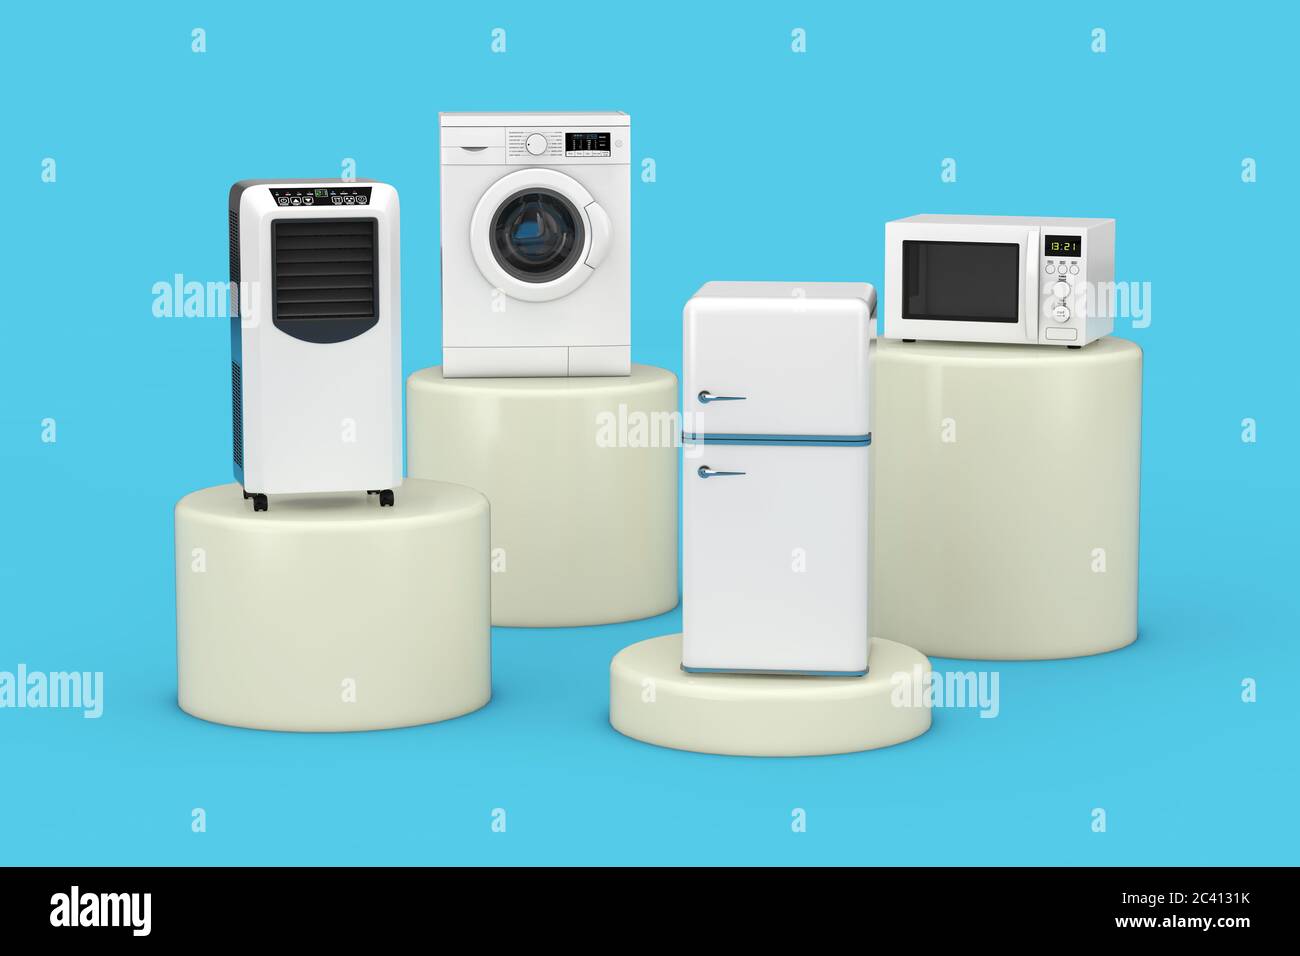 Mobile Conditioner Cooler, Waschmaschine, Kühlschrank und Mikrowelle auf  blauem Hintergrund. 3d-Rendering Stockfotografie - Alamy